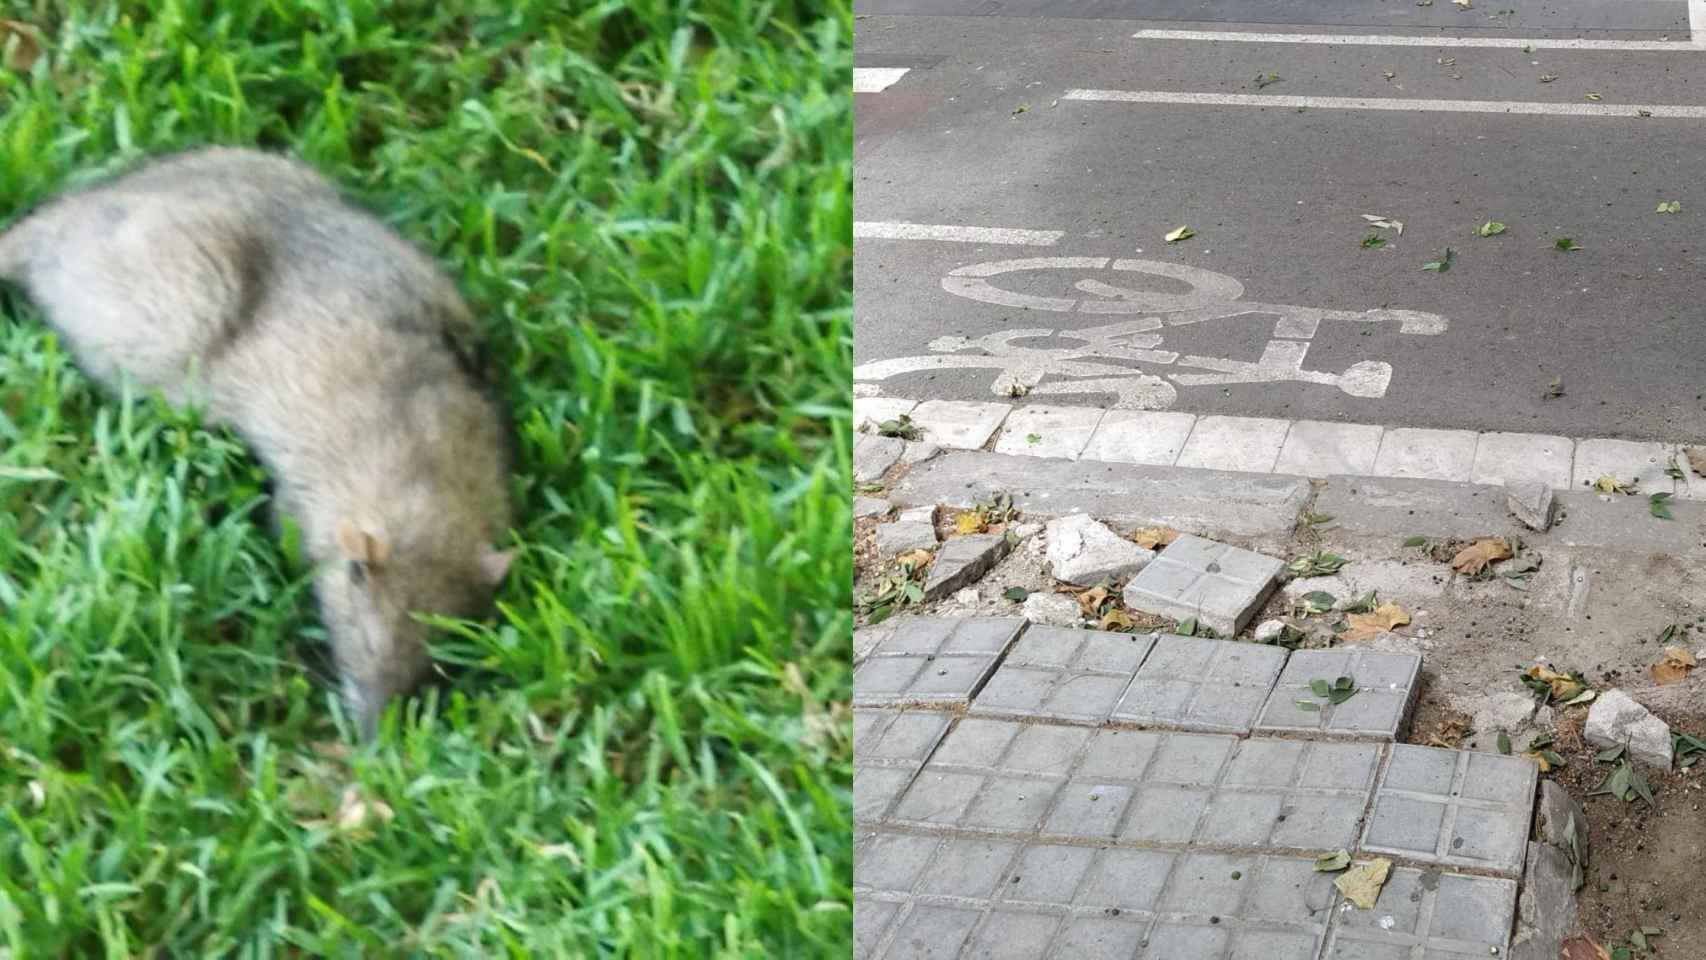 Collage con imágenes cedidas por ERC, con una rata muerta y una acera con el pavimento roto / ERC